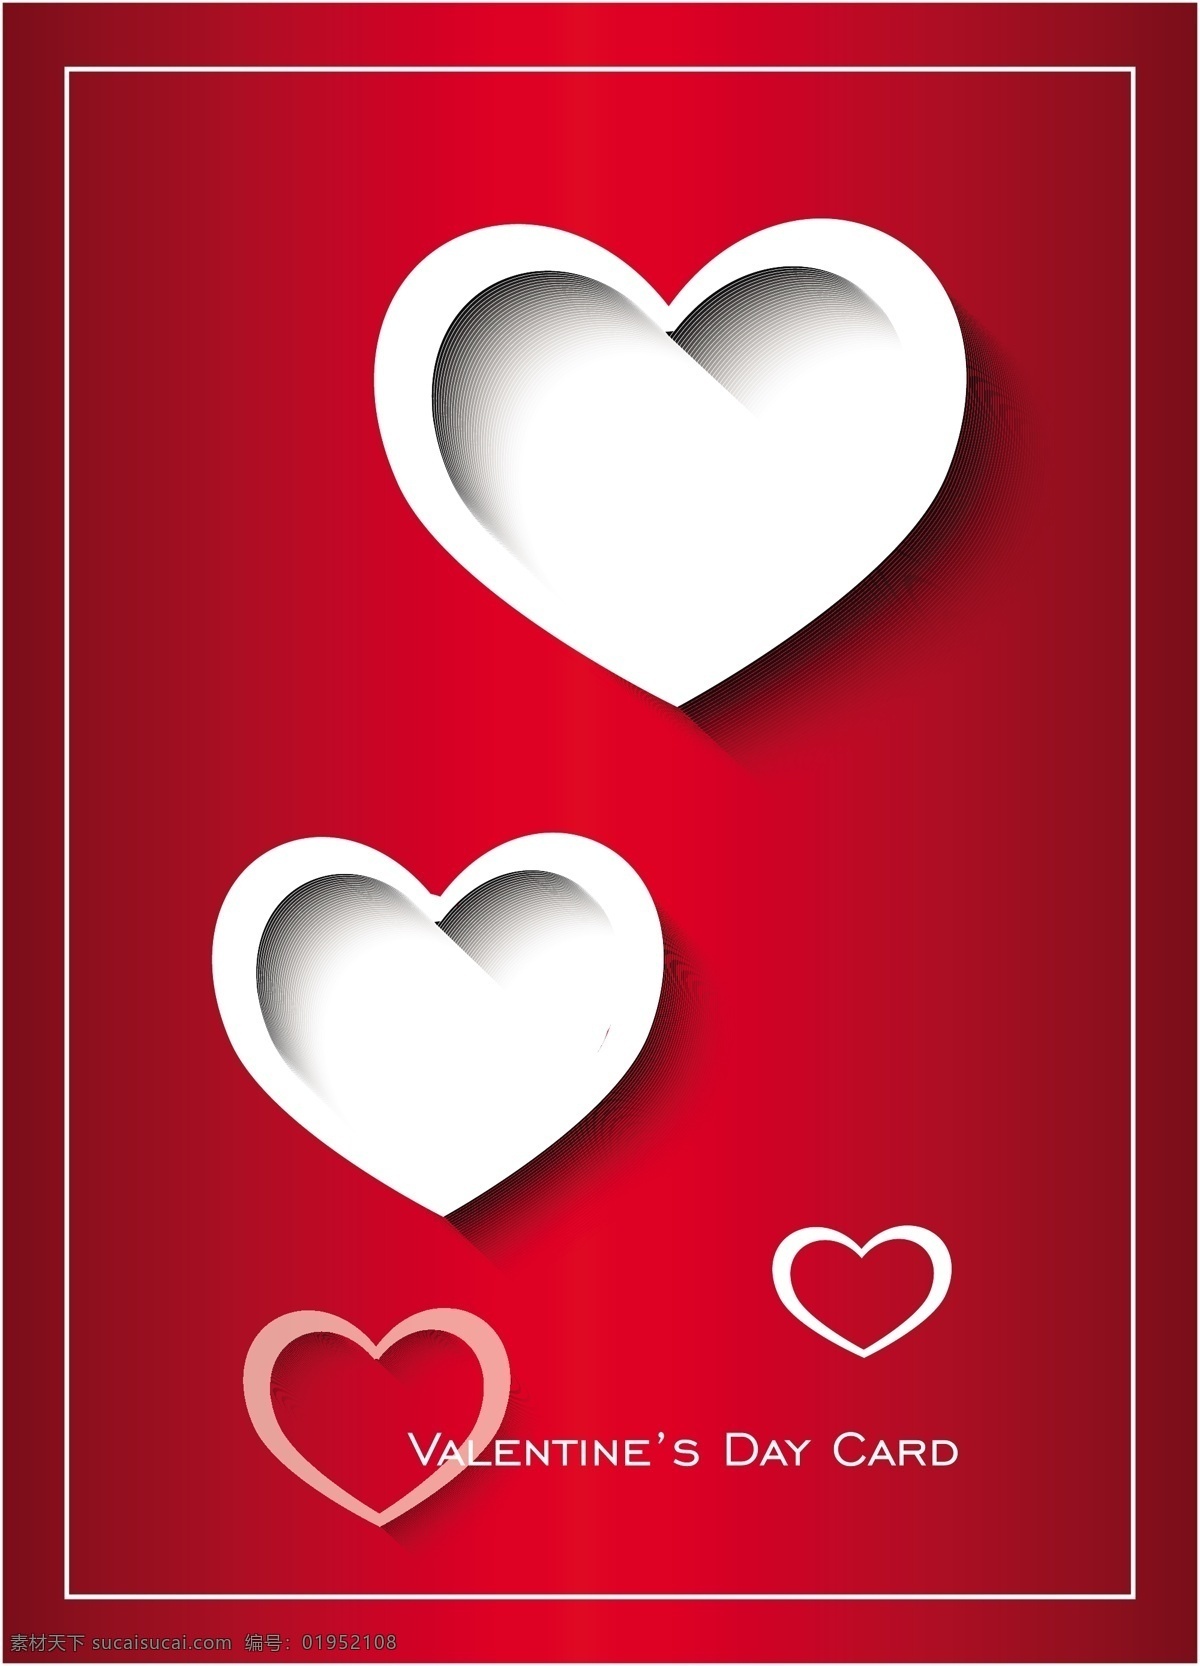 爱情 爱心 红色背景 浪漫 情人 情人节 矢量素材 红色 背景 矢量